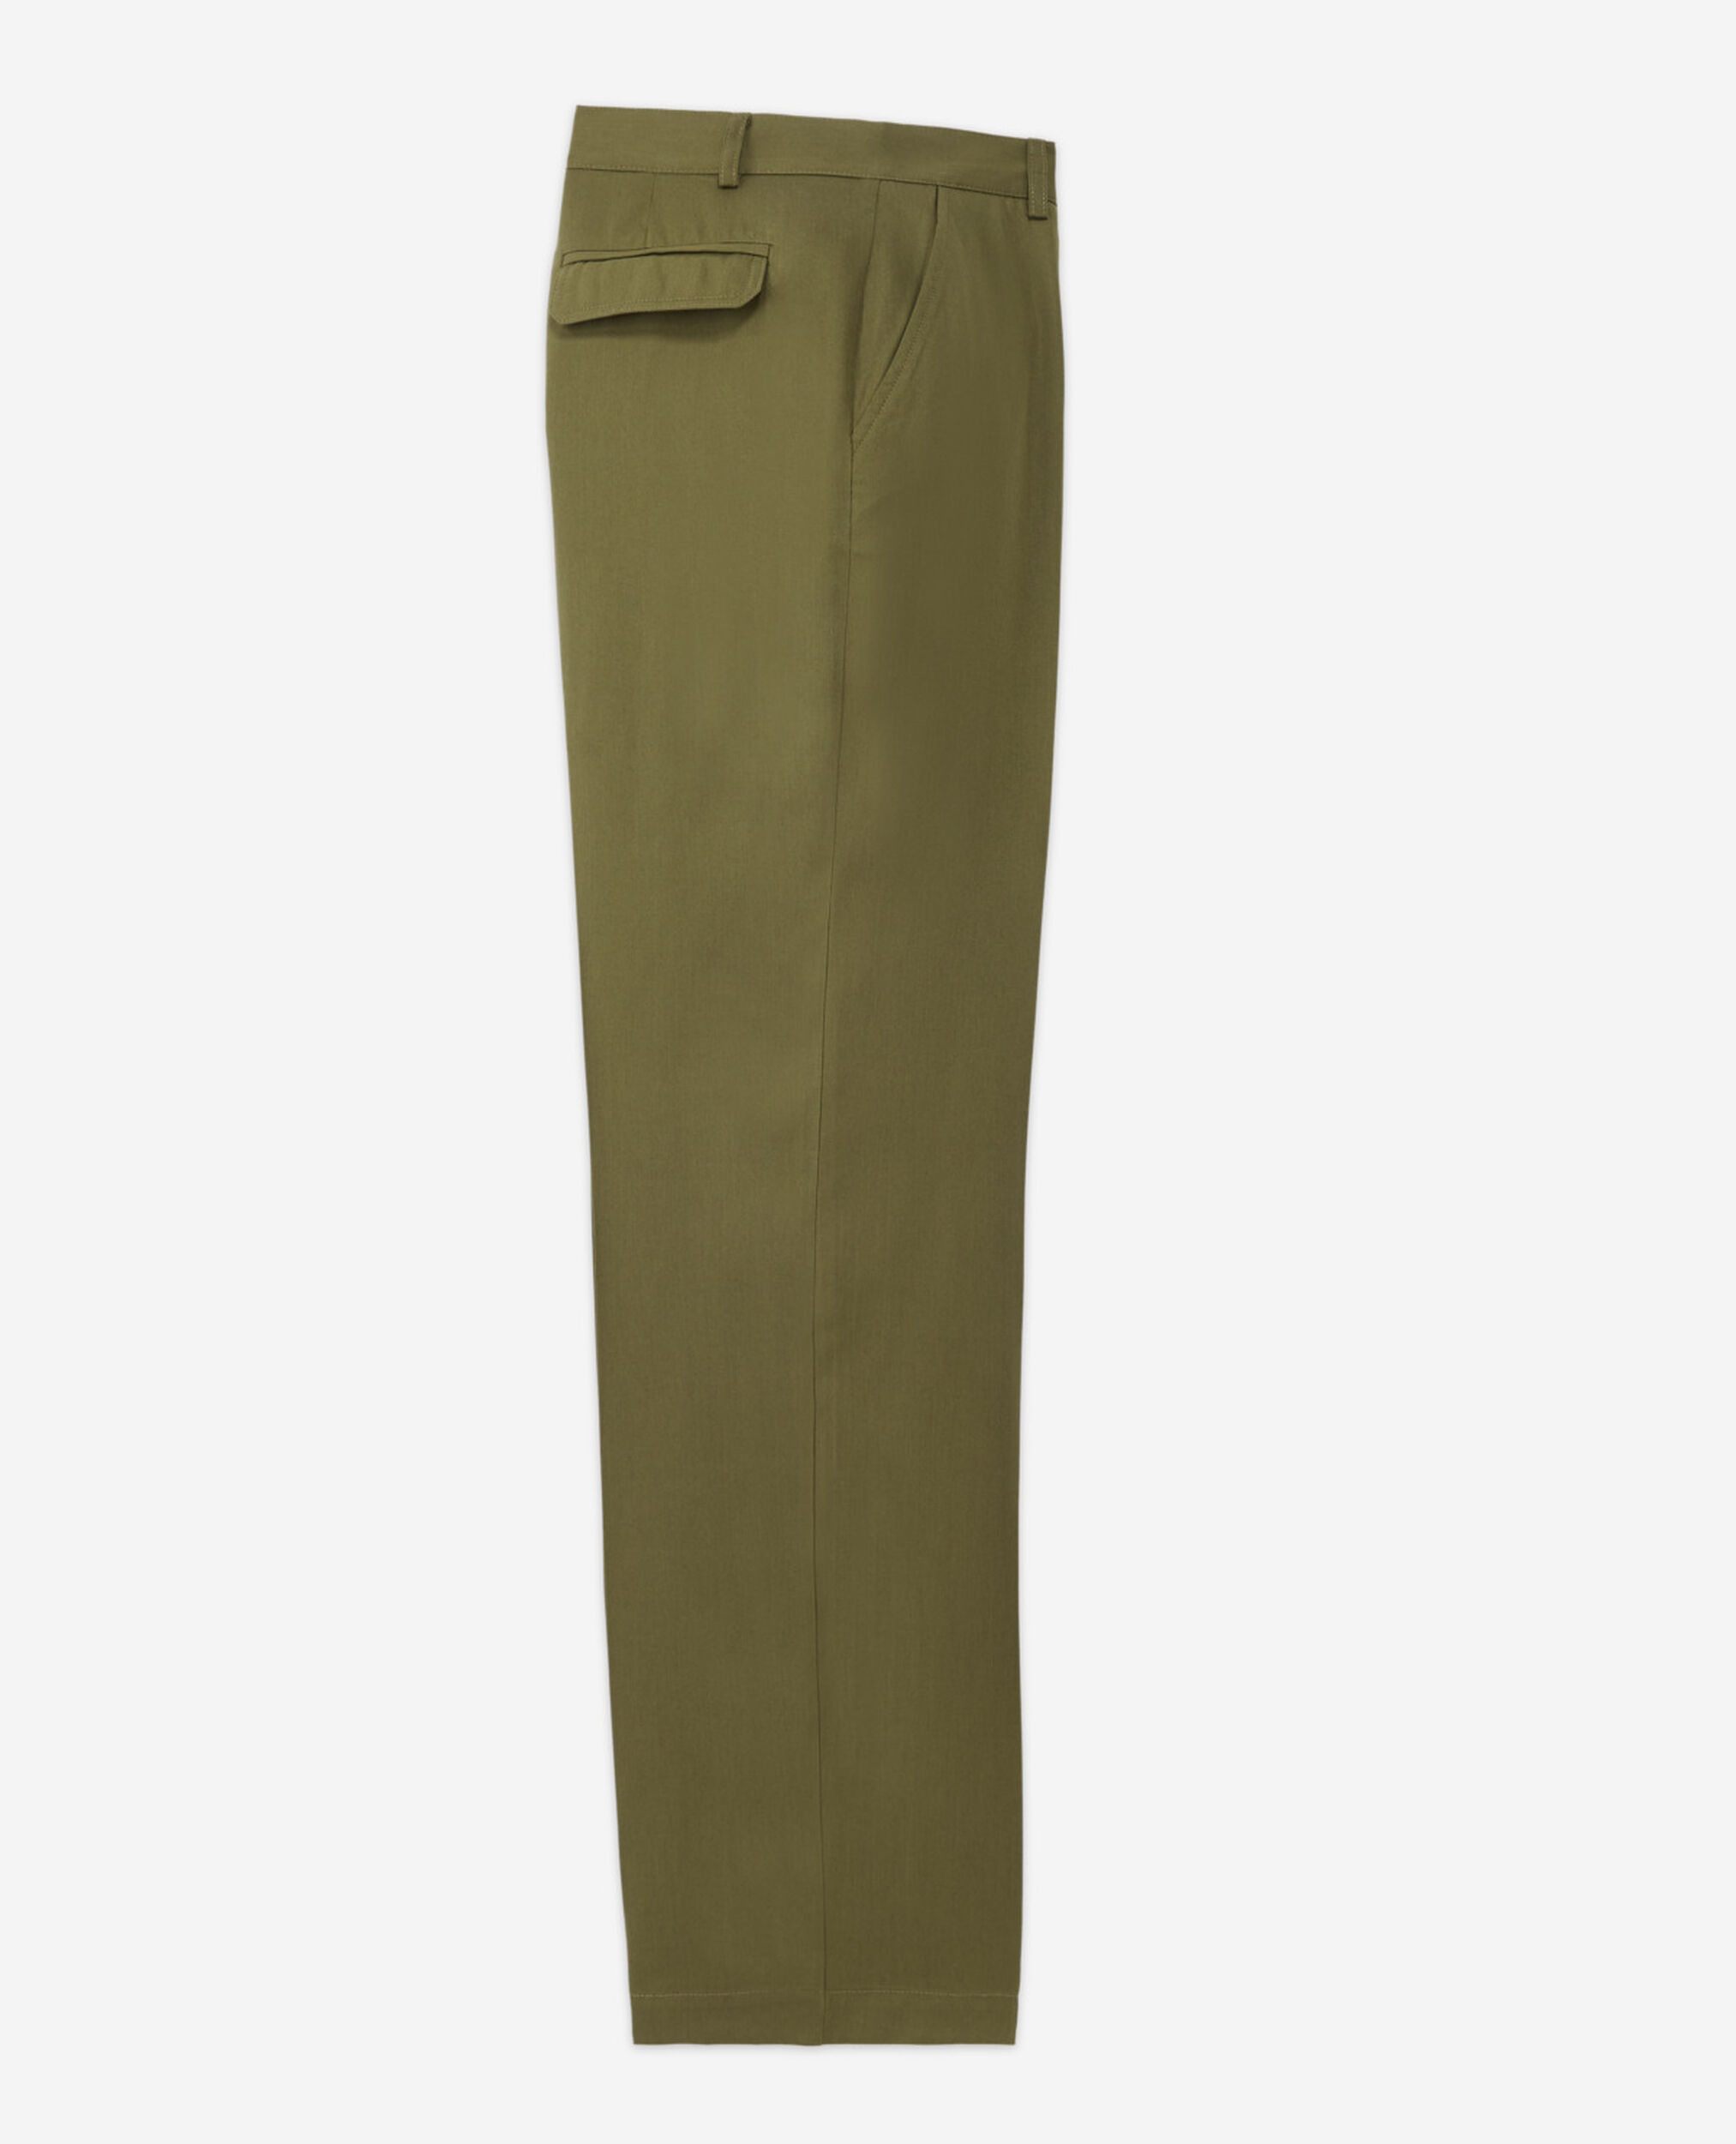 Pantalon kaki tencel style militaire, KAKI, hi-res image number null